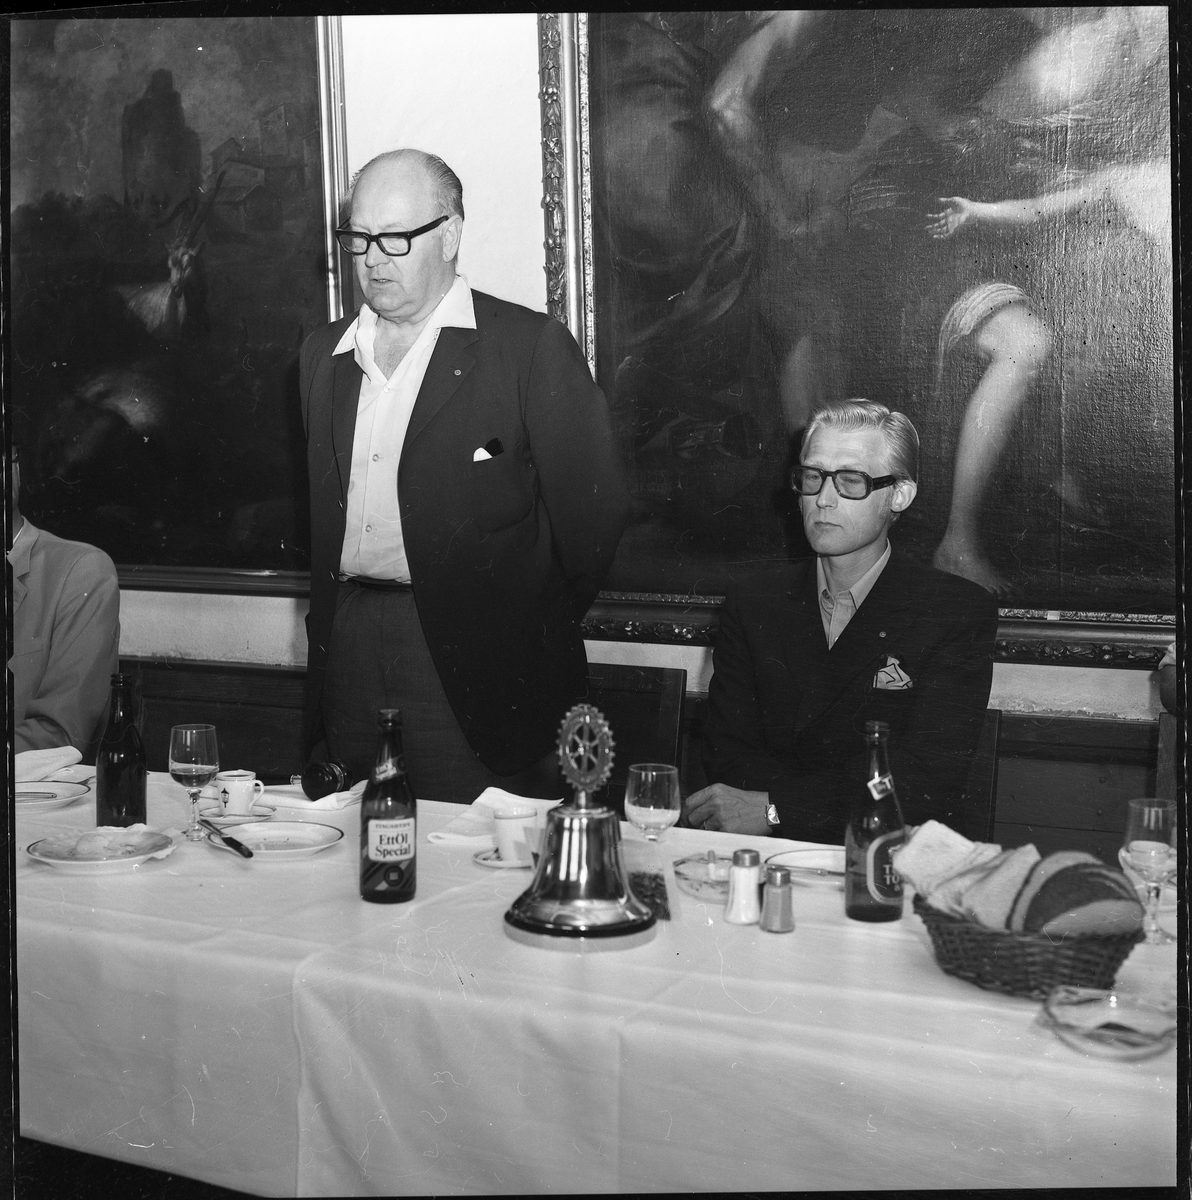 En man står upp vid ett matbord och håller sannolikt ett tal. På bordet en "Rotary-klocka", kaffekoppar, glas och ölflaskor. Han flankeras av sittande män.